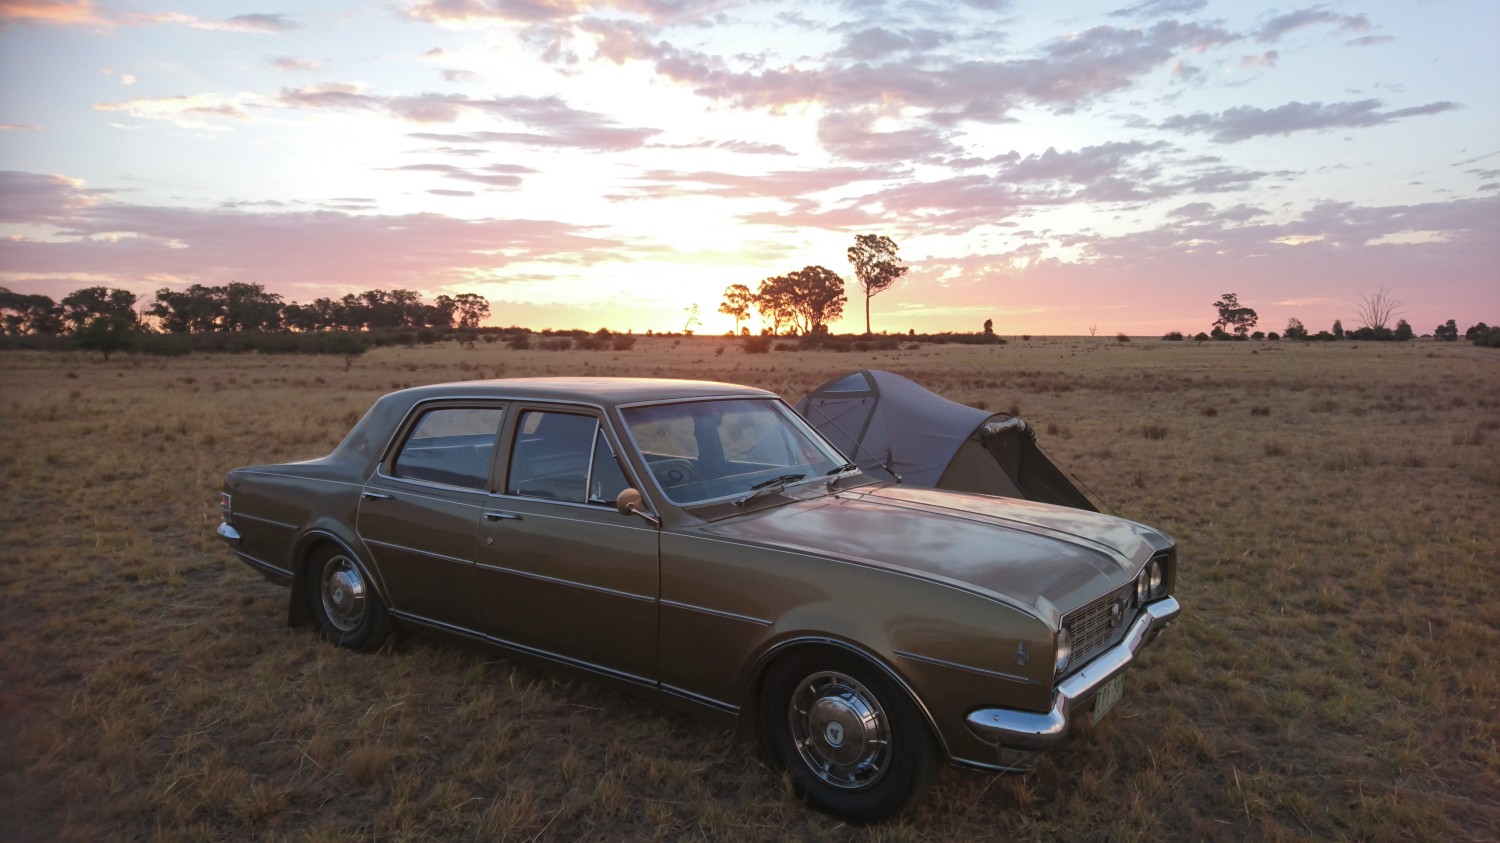 1970 Holden HT Premier